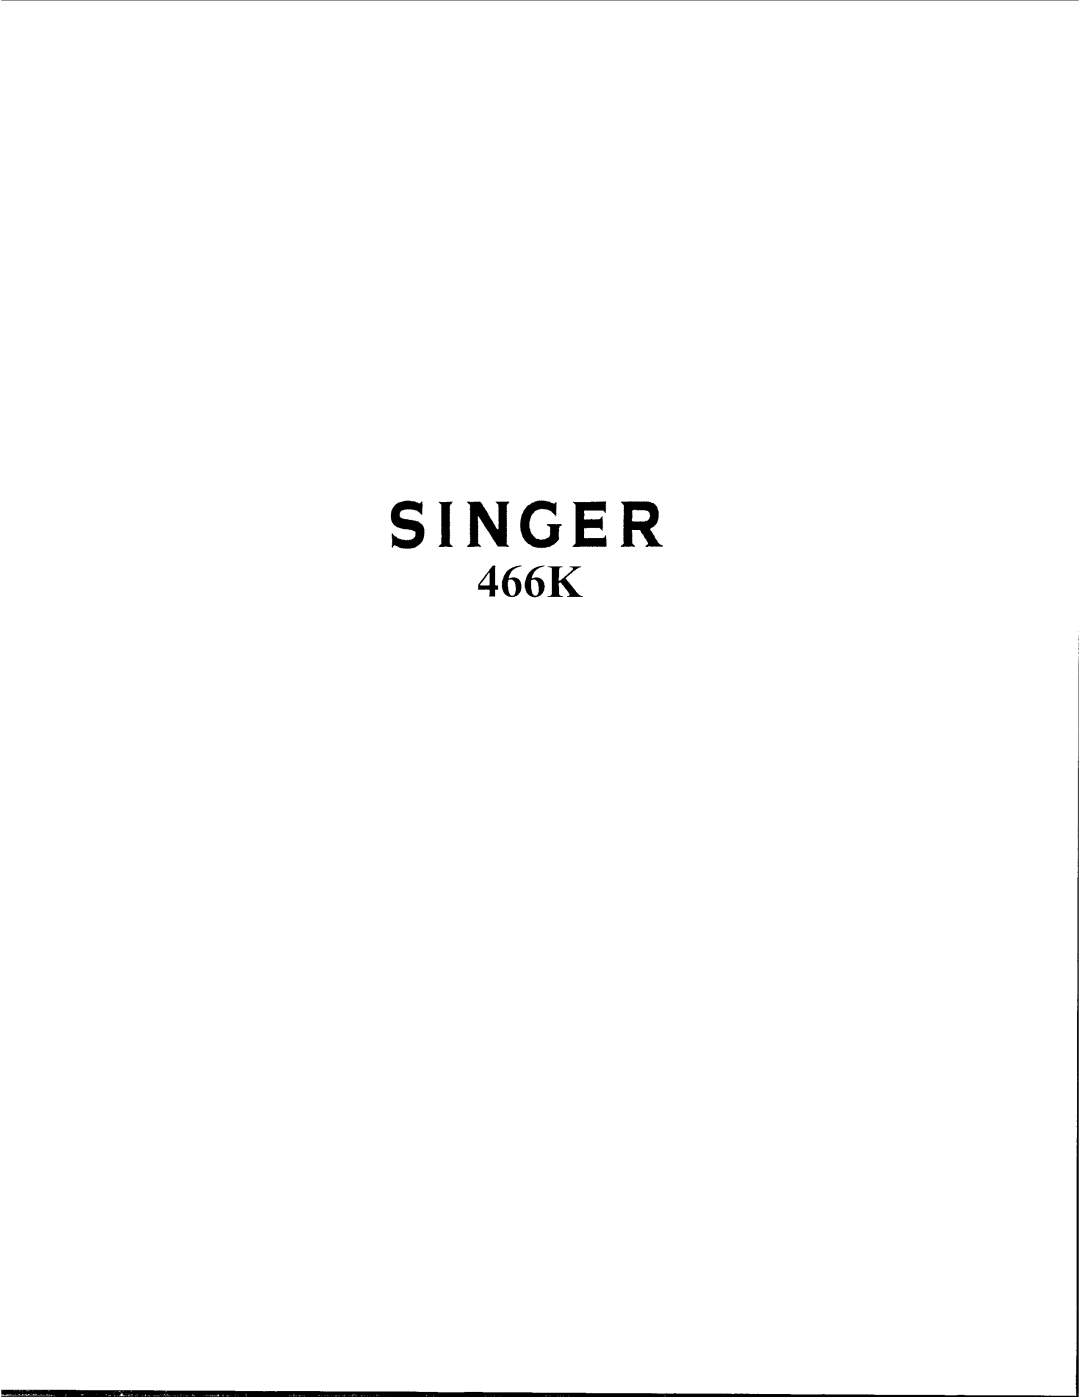 Singer 466K manual 